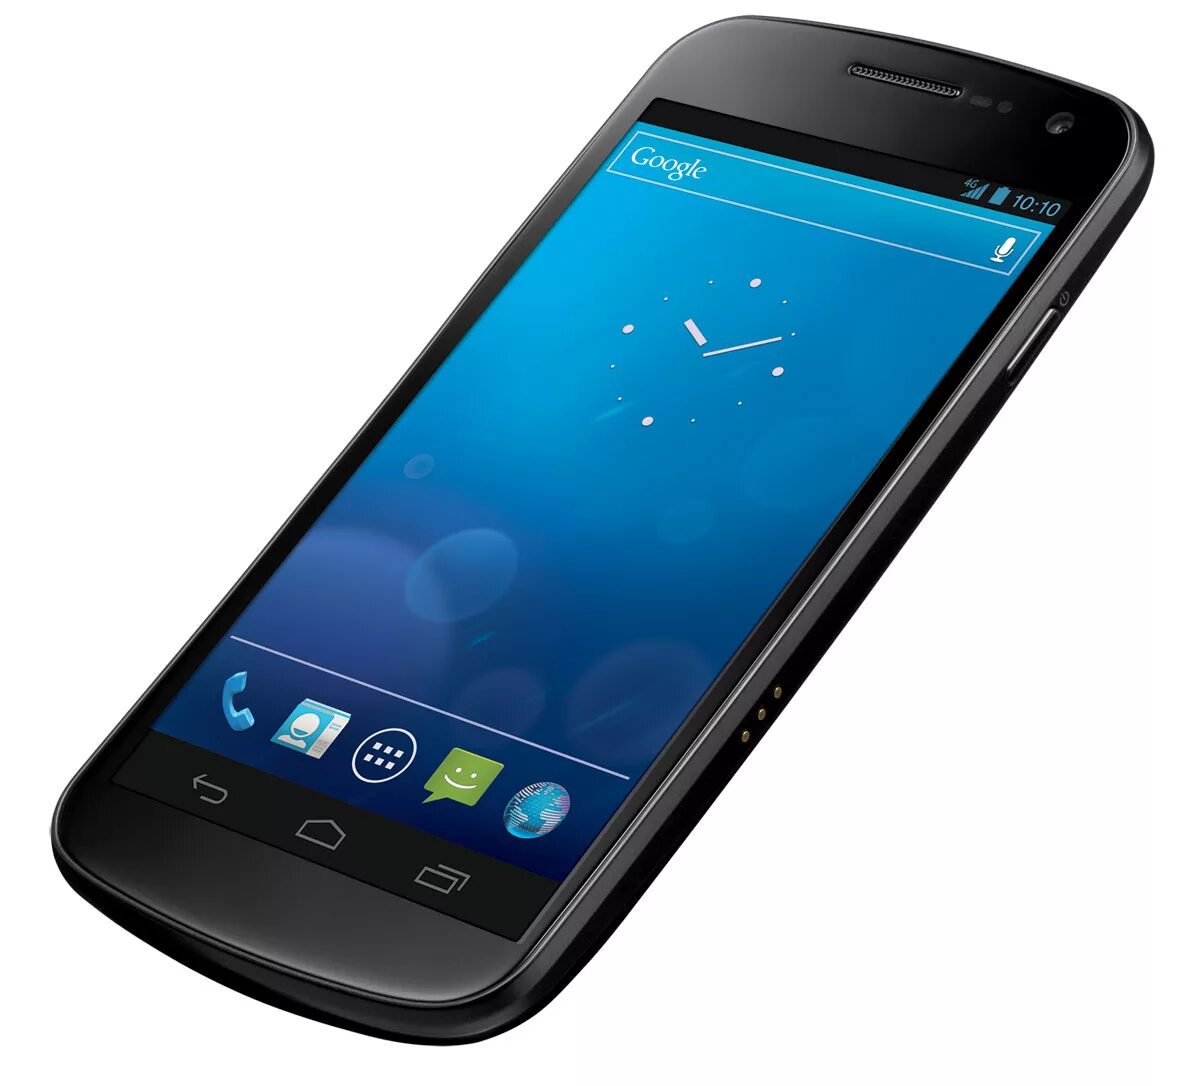 Купить телефон андроид спб. Самсунг галакси Нексус. Samsung Android 4.4. Галакси Нексус 2012. Galaxy Nexus 4.